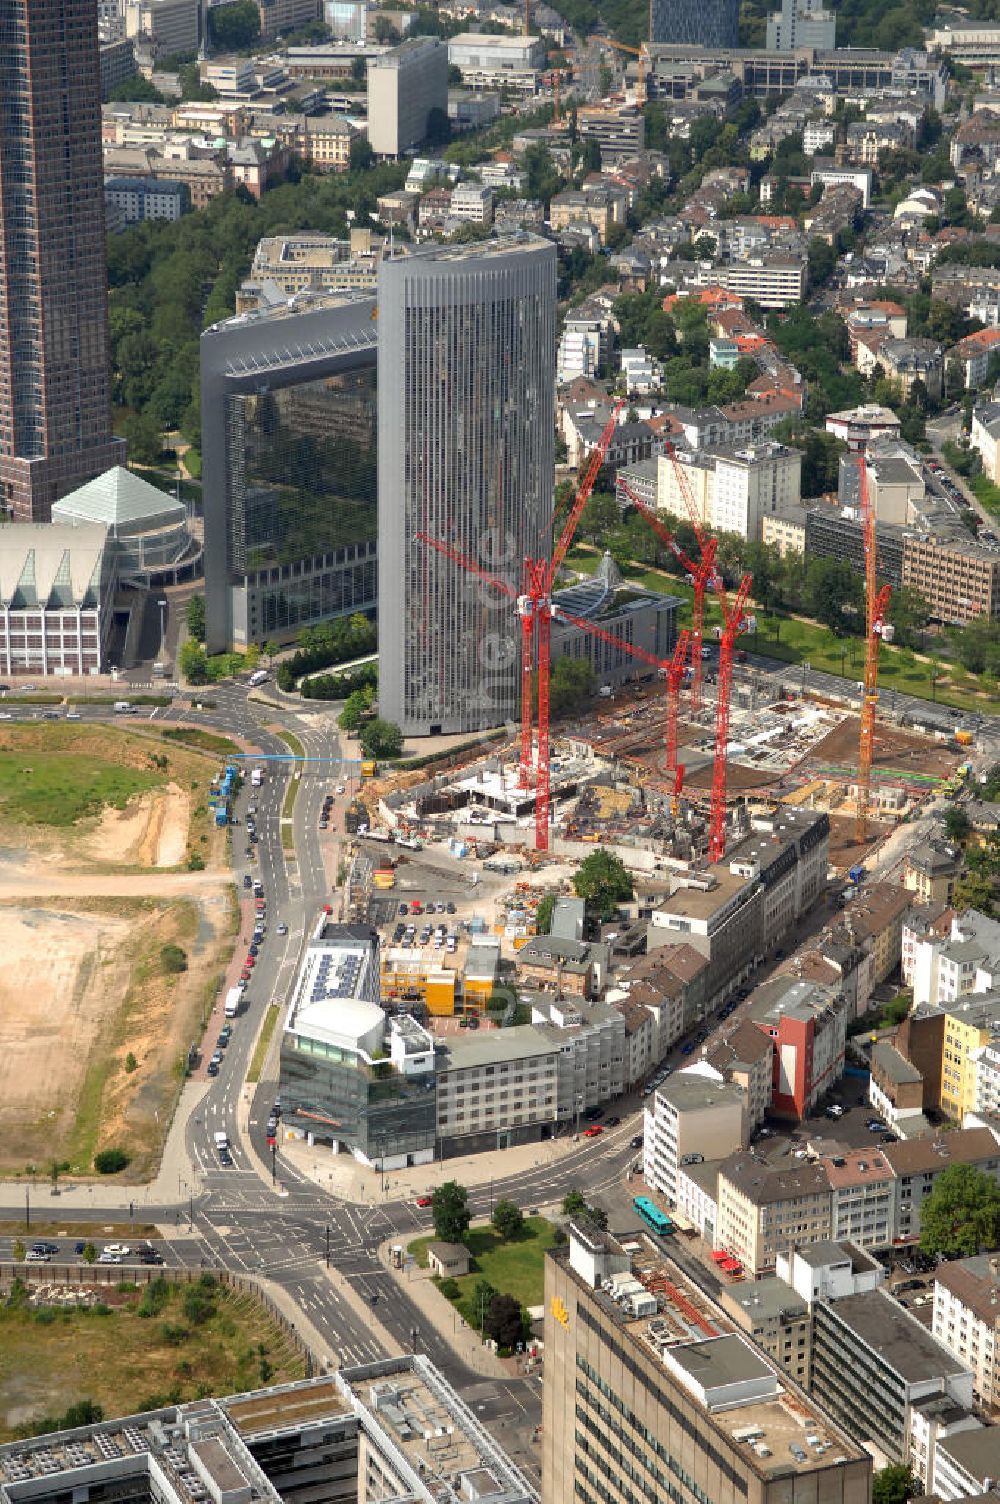 Luftbild Frankfurt am Main - Baustelle des Tower 185 und die Kastor und Pollux-Hochhäuser in Frankfurt am Main